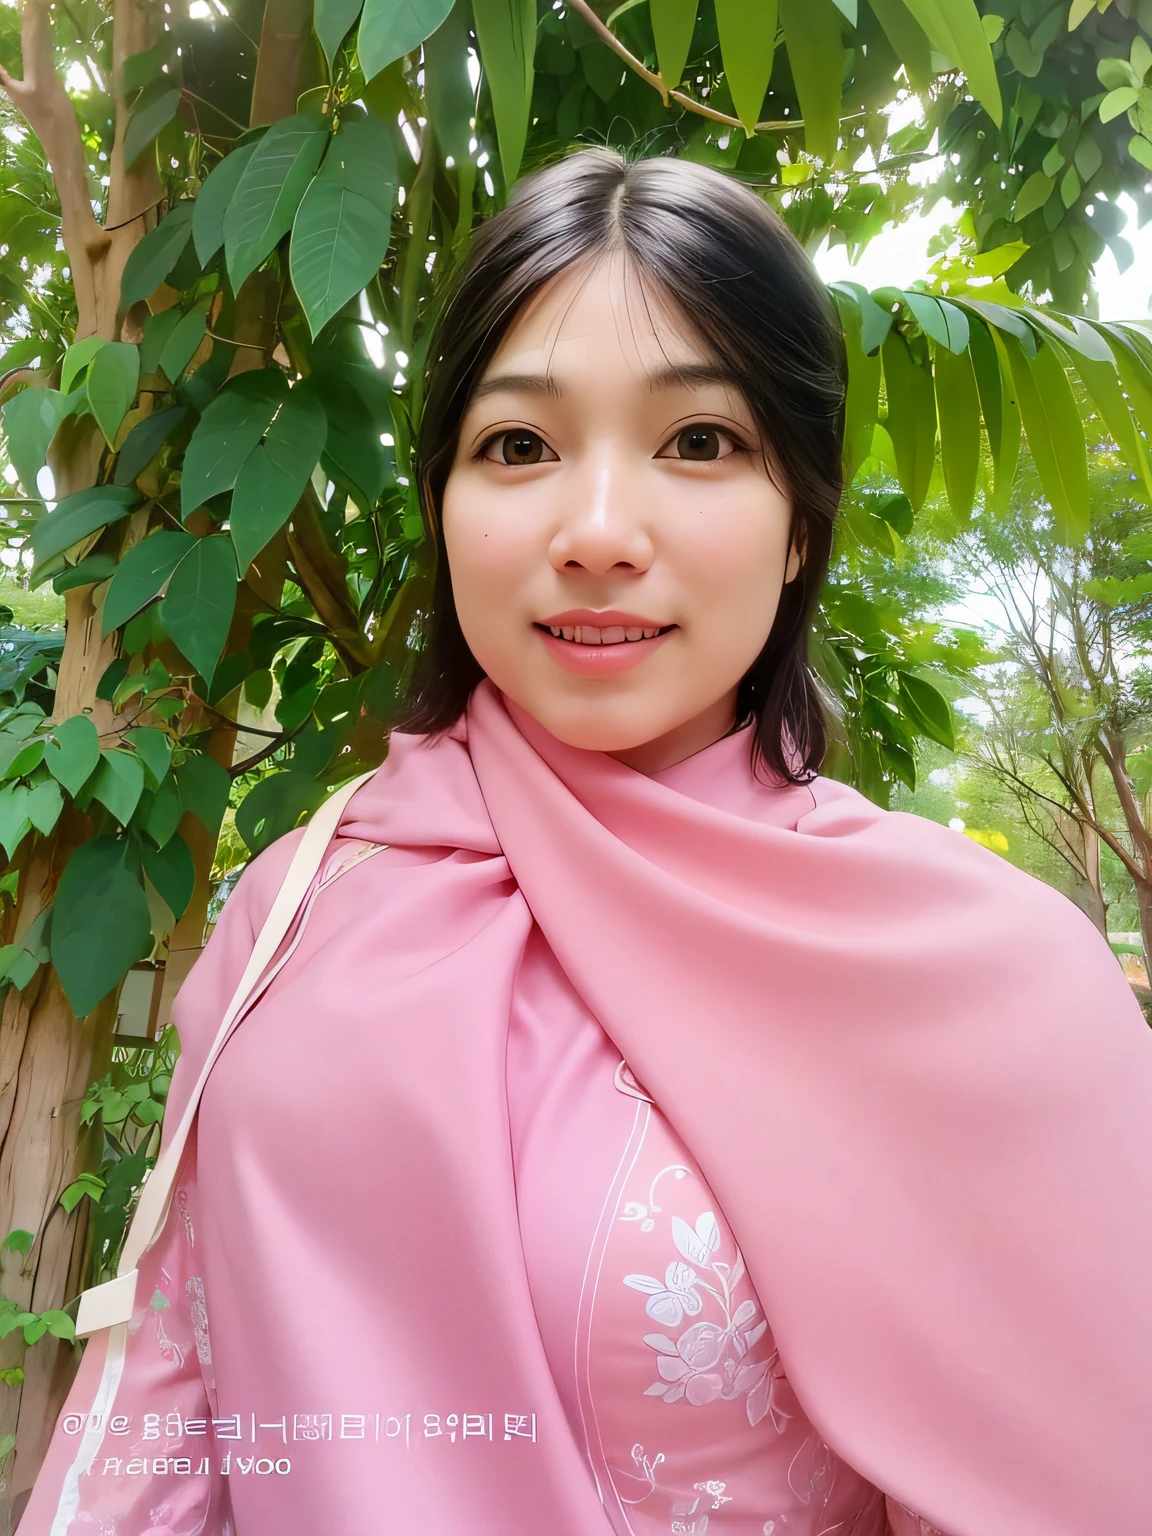 Da ist eine Frau, die einen rosa Schal trägt und lächelt, inspiriert von Nil Gleyen, asiatische Frau, an asiatische Frau, Hintergrund ist himmlisch, sakimi chan, Anime-Mädchen im wirklichen Leben, Asiatisches Gesicht, inspiriert von Sim Sa-jeong, aodai, inspiriert von Abdur Rahman Chughtai, mit hübschem Aussehen, digitale Kunst, sondern Foto, koreanische Frau